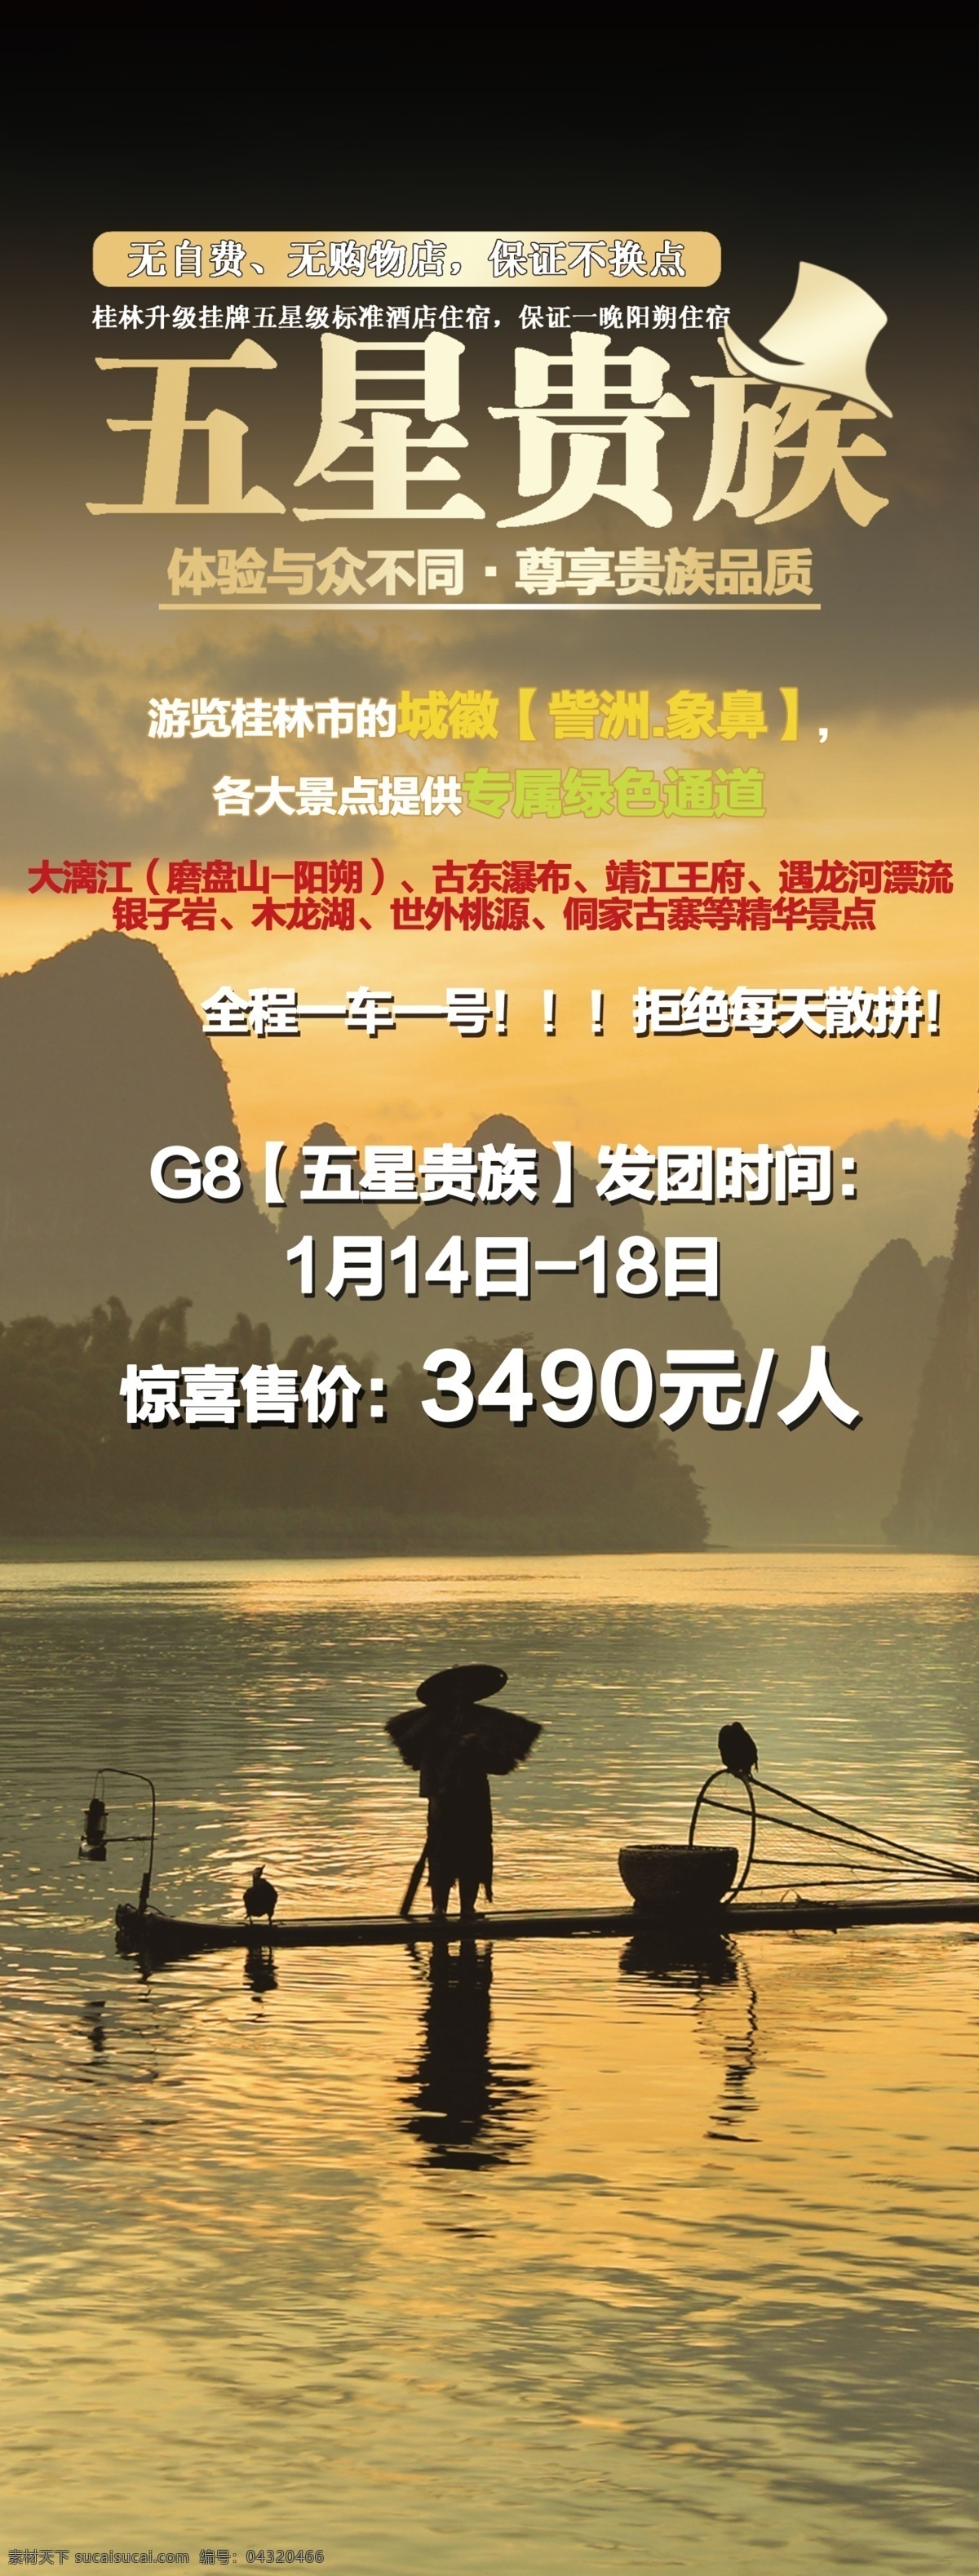 桂林旅游 宣传海报 宣传 海报 桂林 旅游 贵族旅游